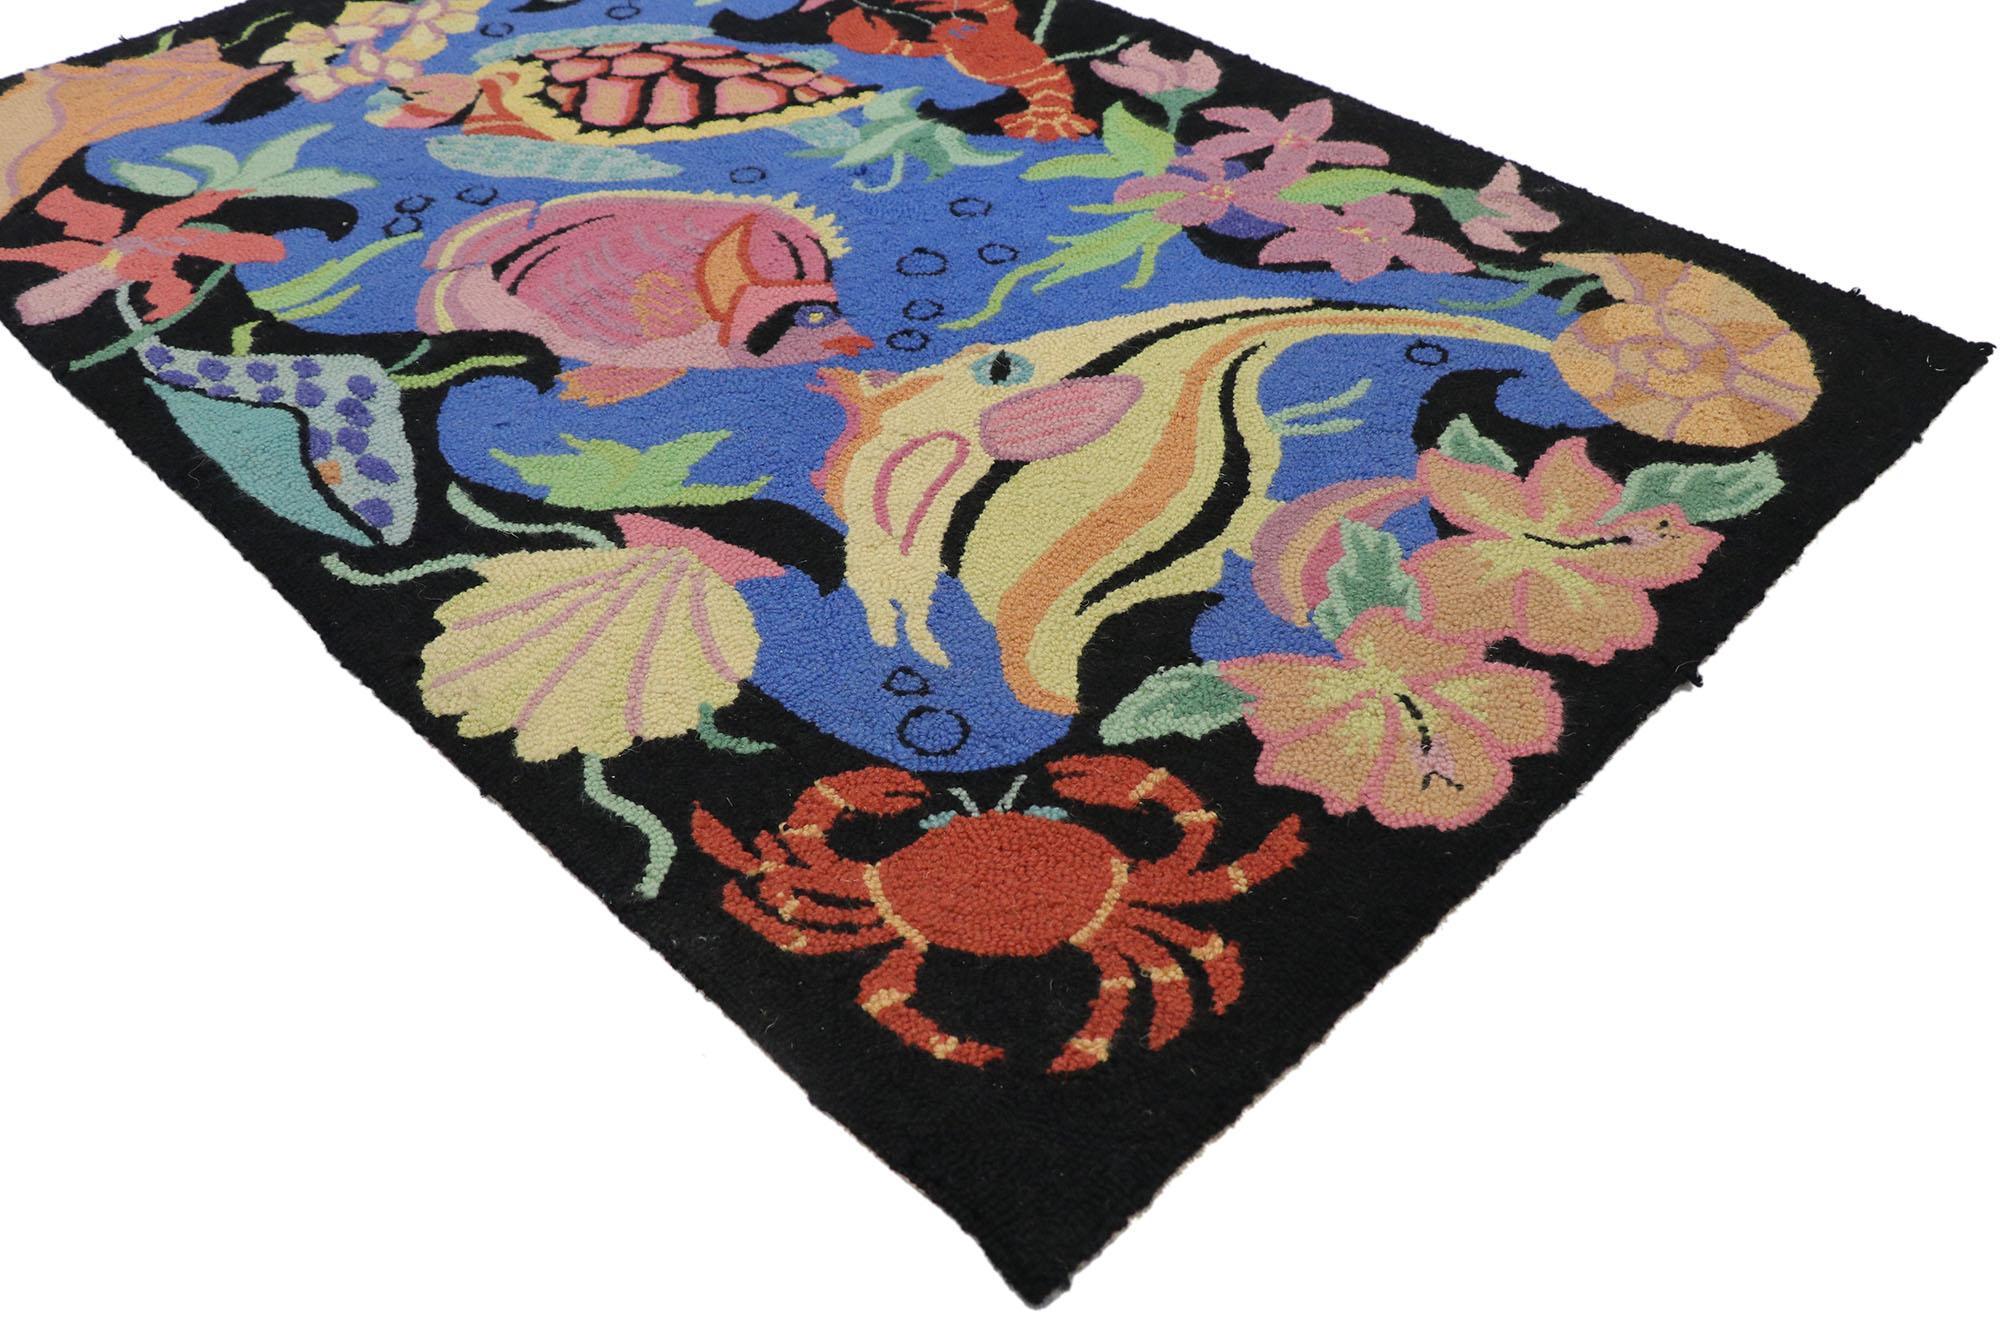 78072 Vintage Chinese Hooked Seascape Pictorial Rug, 02'06 x 03'11. Les tapis chinois à crochets, également connus sous le nom de tapis chinois déco ou tapis chinois Art déco, sont des tapis décoratifs originaires de Chine et popularisés pendant la